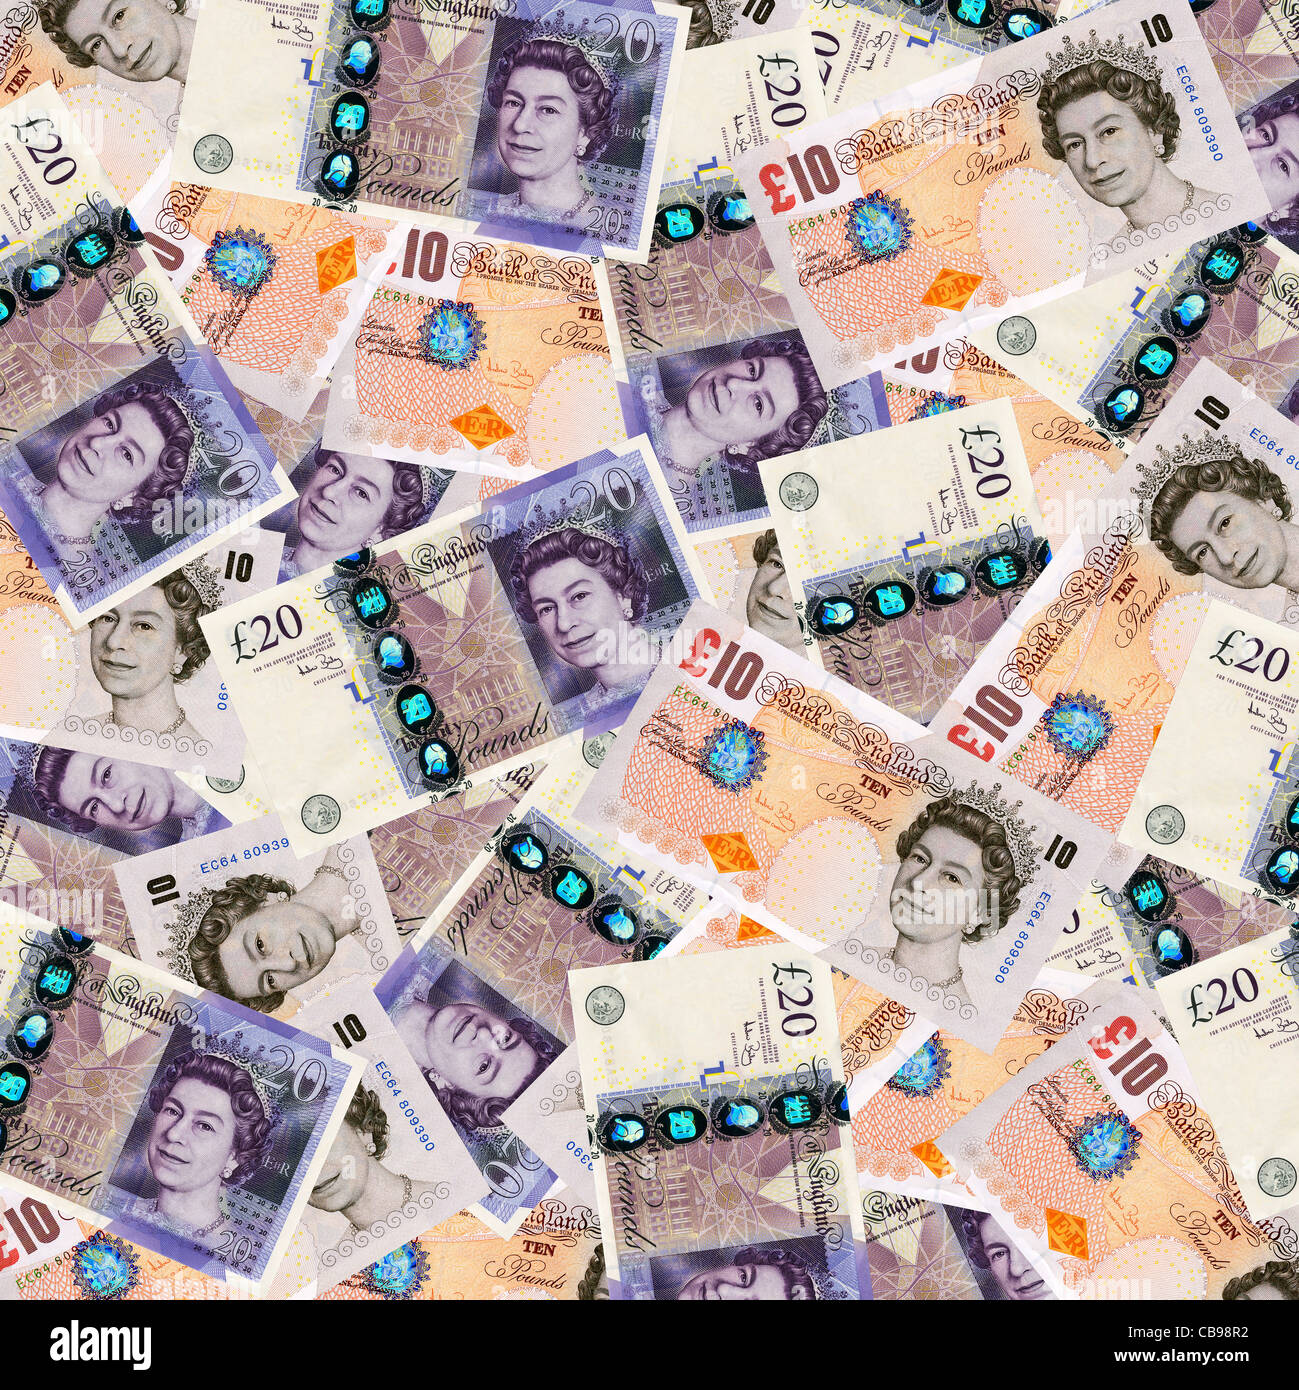 Geld - stellt zehn und zwanzig Pfund Sterling Währung Draufsicht Stockfoto